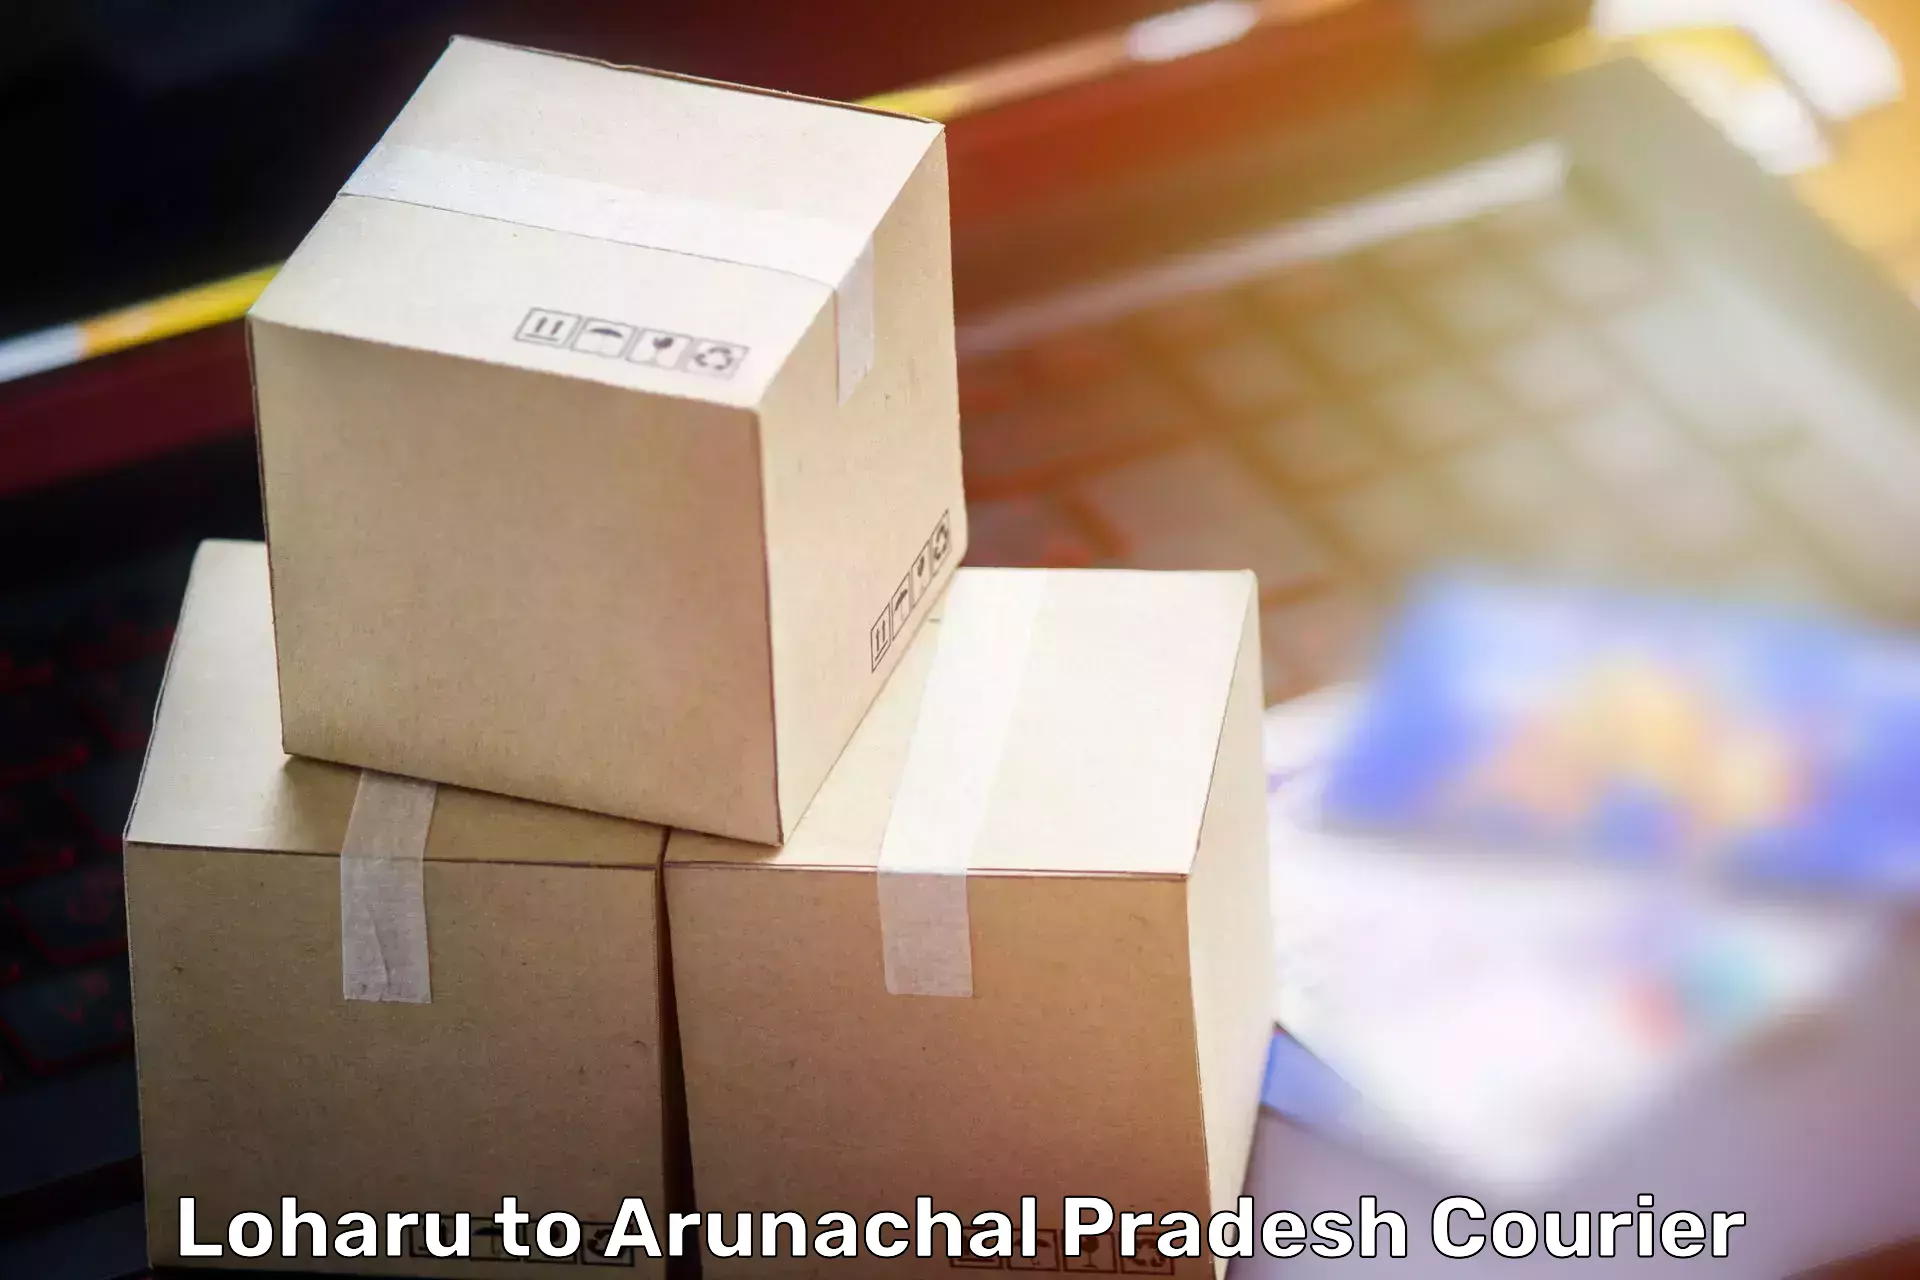 Furniture transport experts Loharu to Arunachal Pradesh